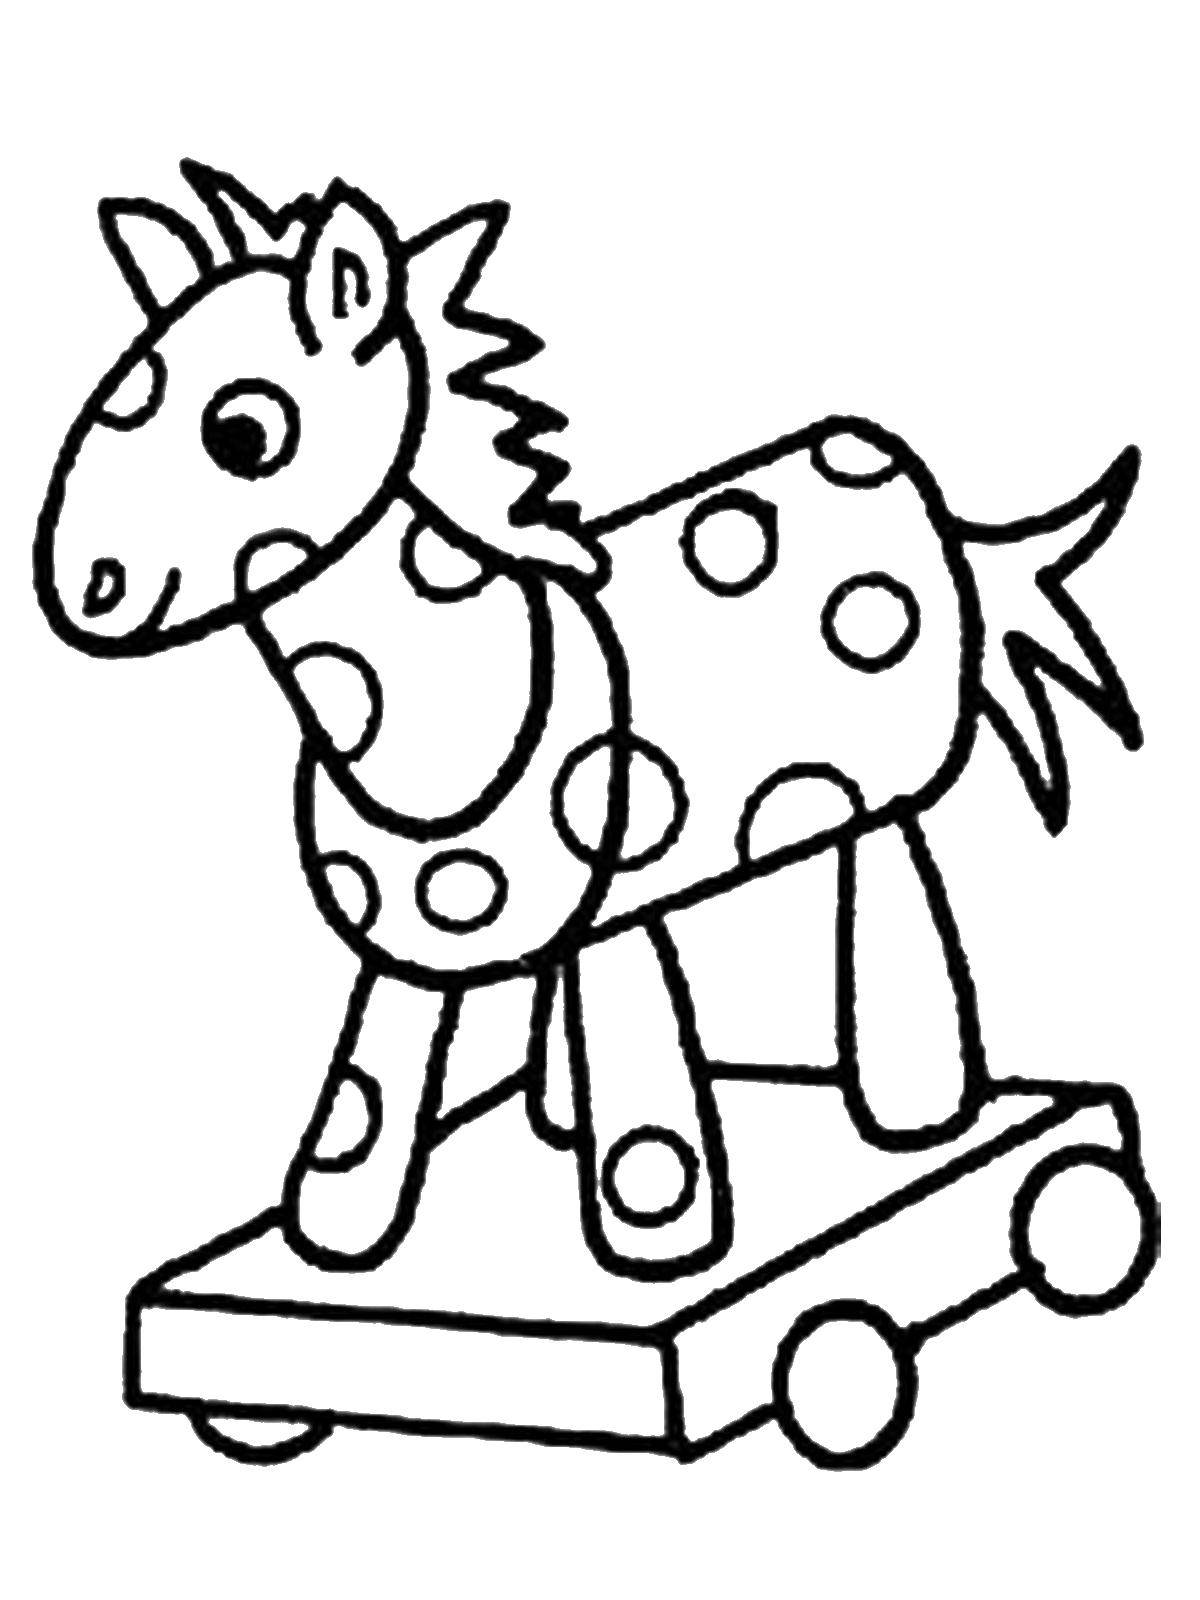 Название: Раскраска Лошадка на колесиках. Категория: игрушки. Теги: лошадка, колесики.